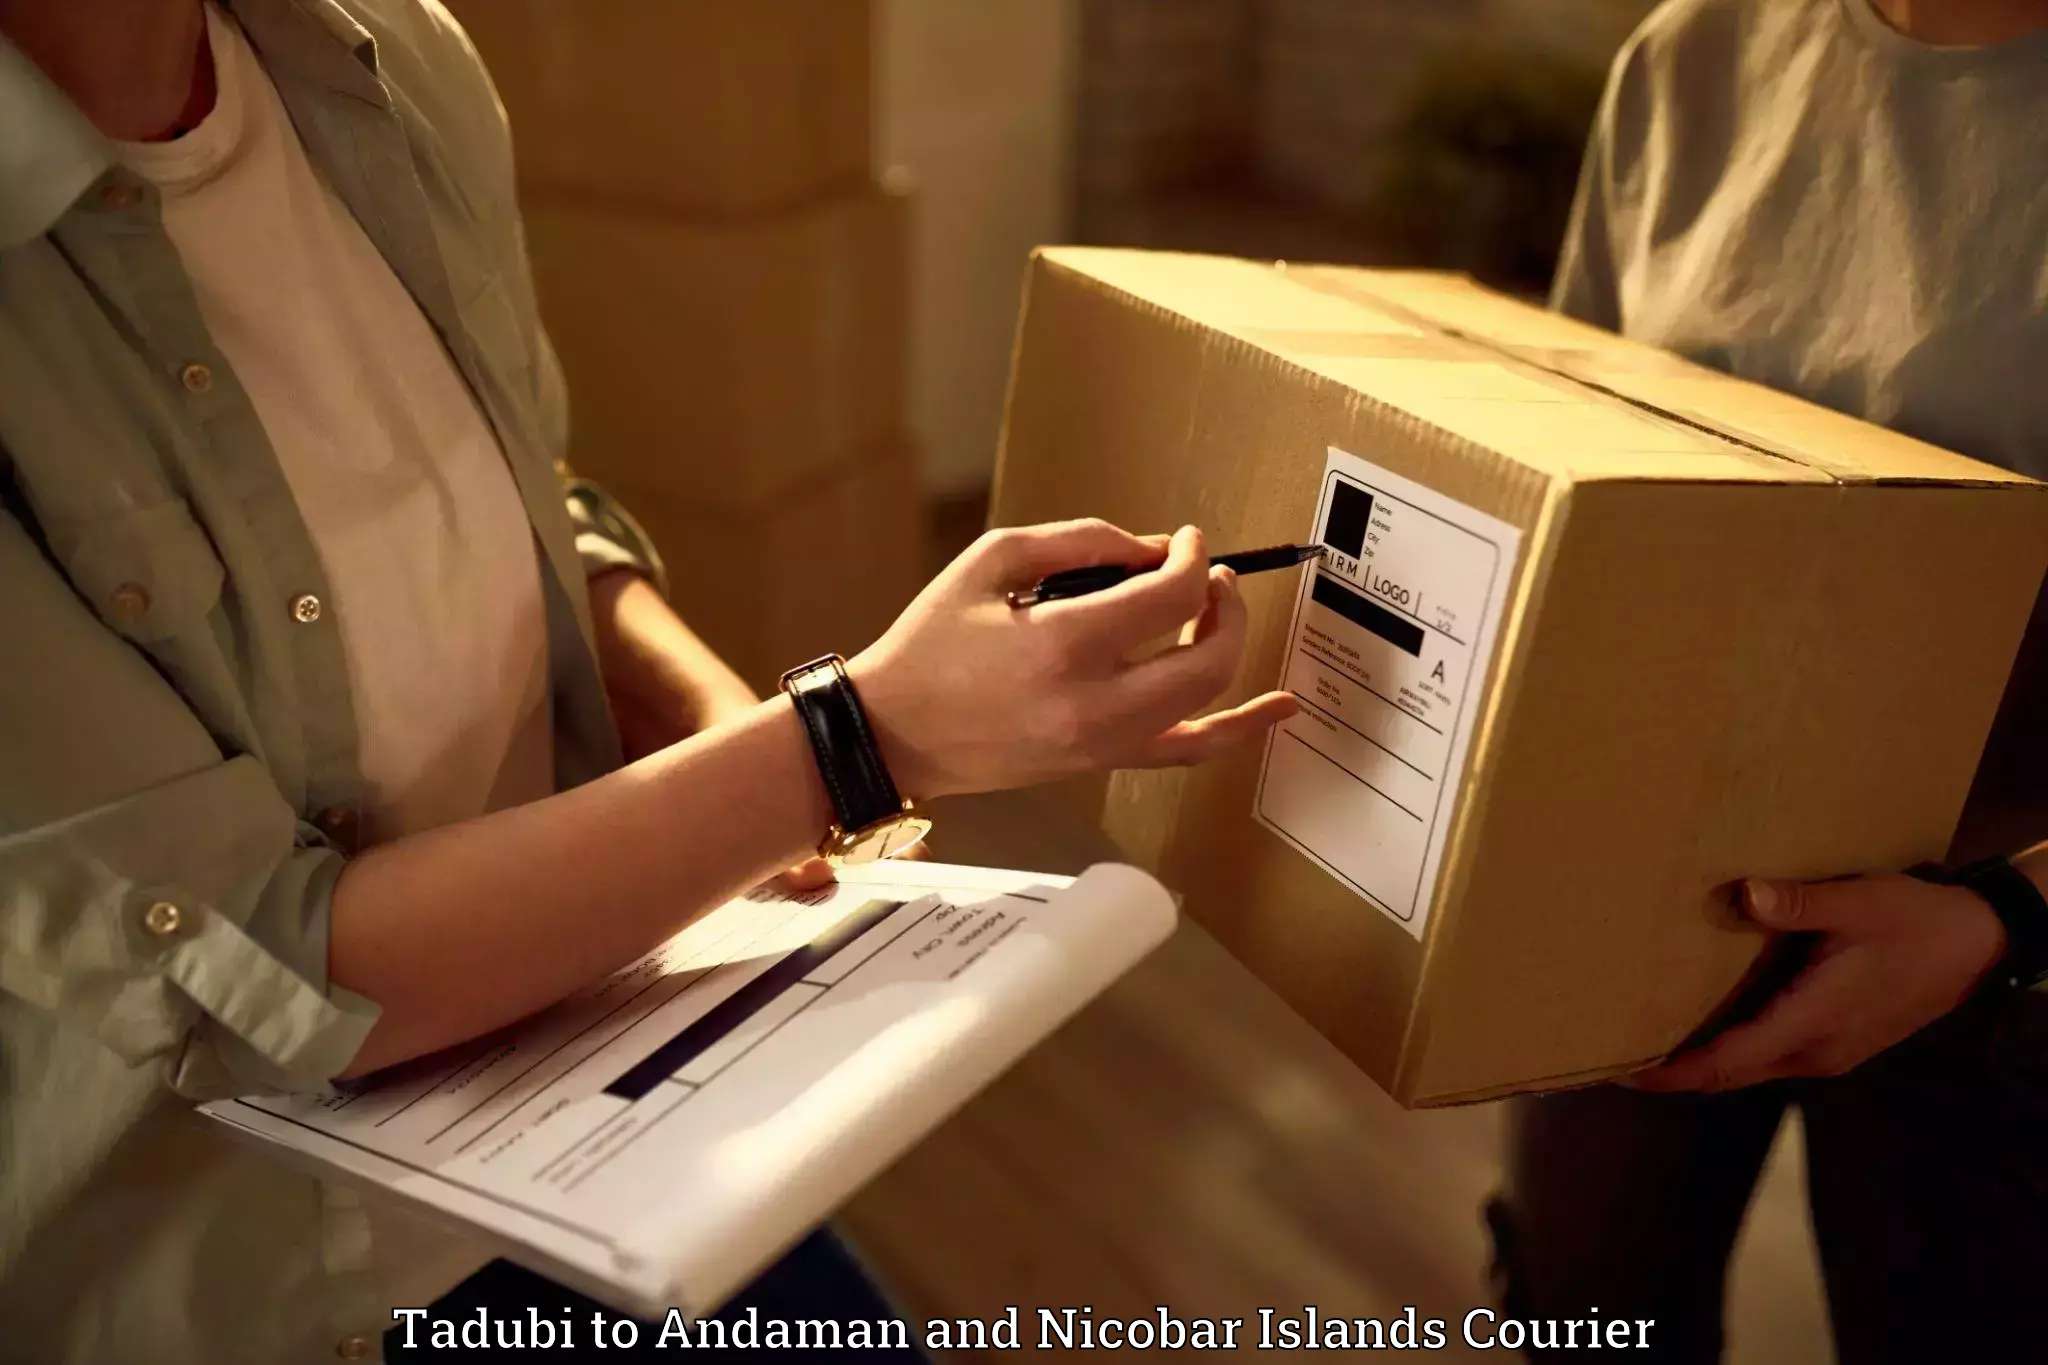 Furniture transport experts Tadubi to Andaman and Nicobar Islands